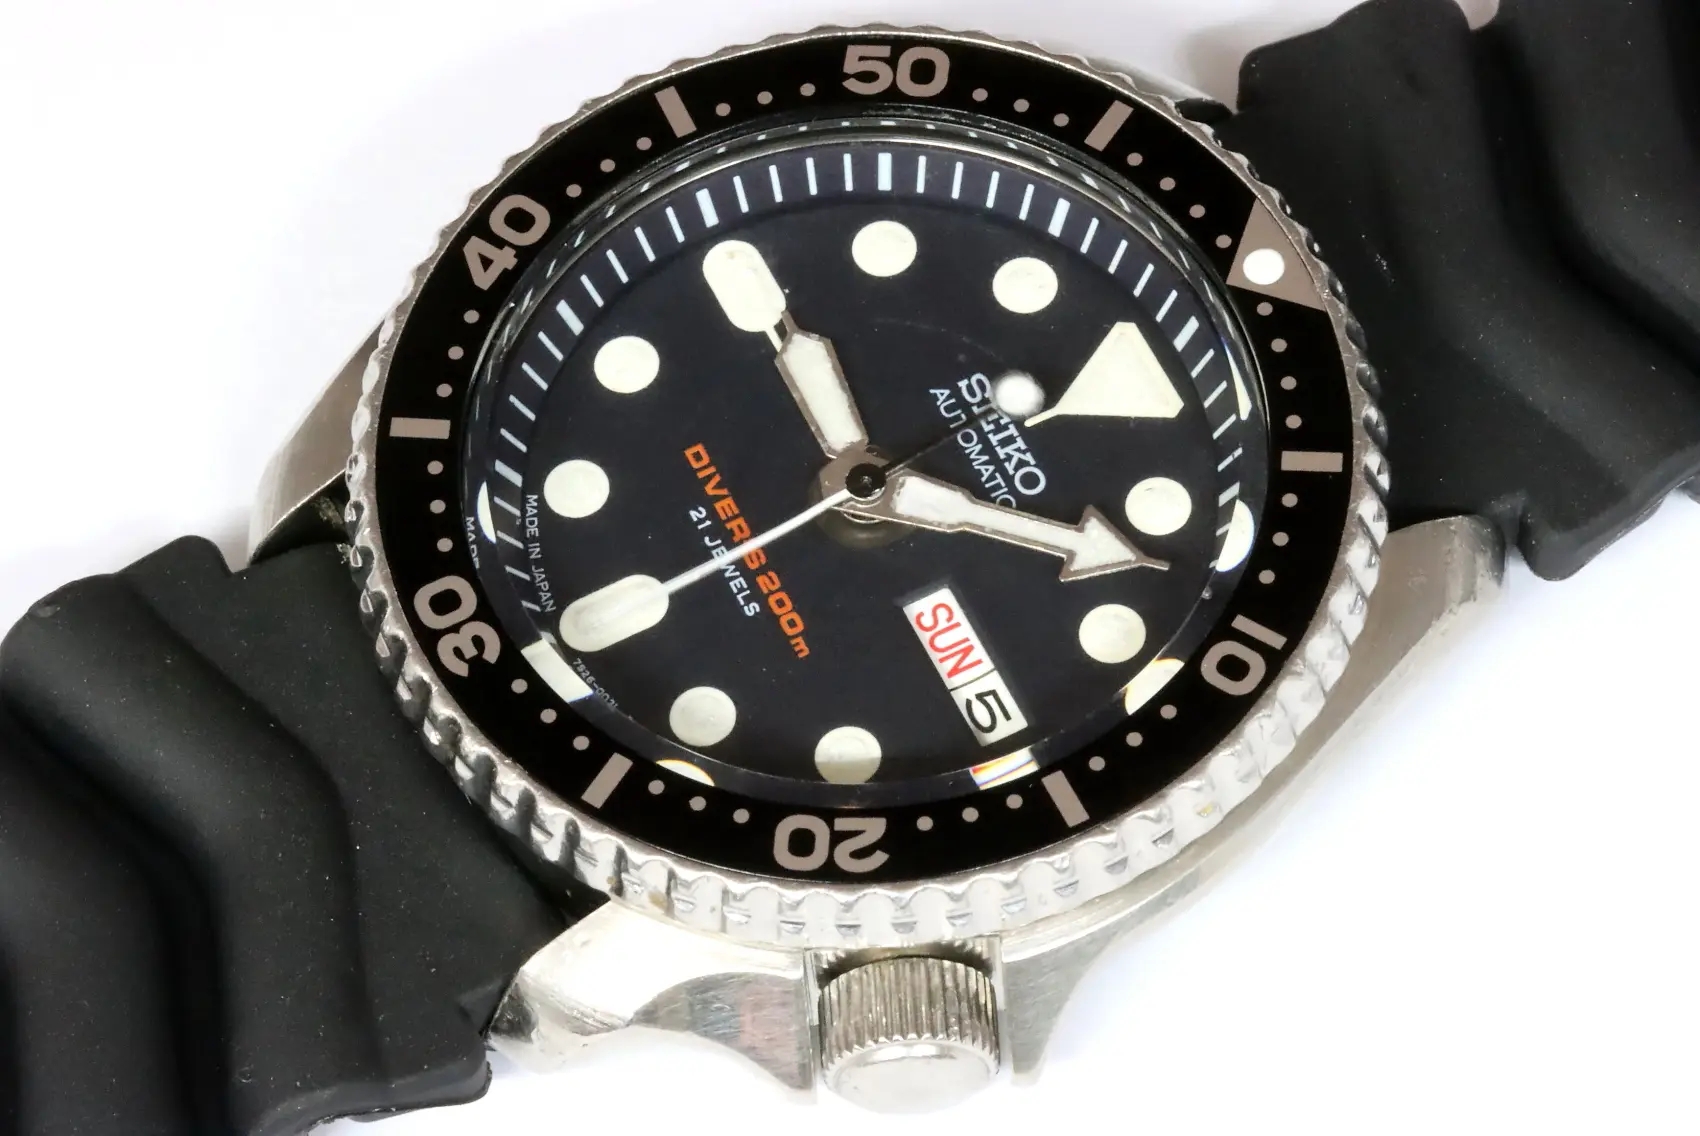 Seiko 7S26-0020 SKX007 Japanese market diver's watch